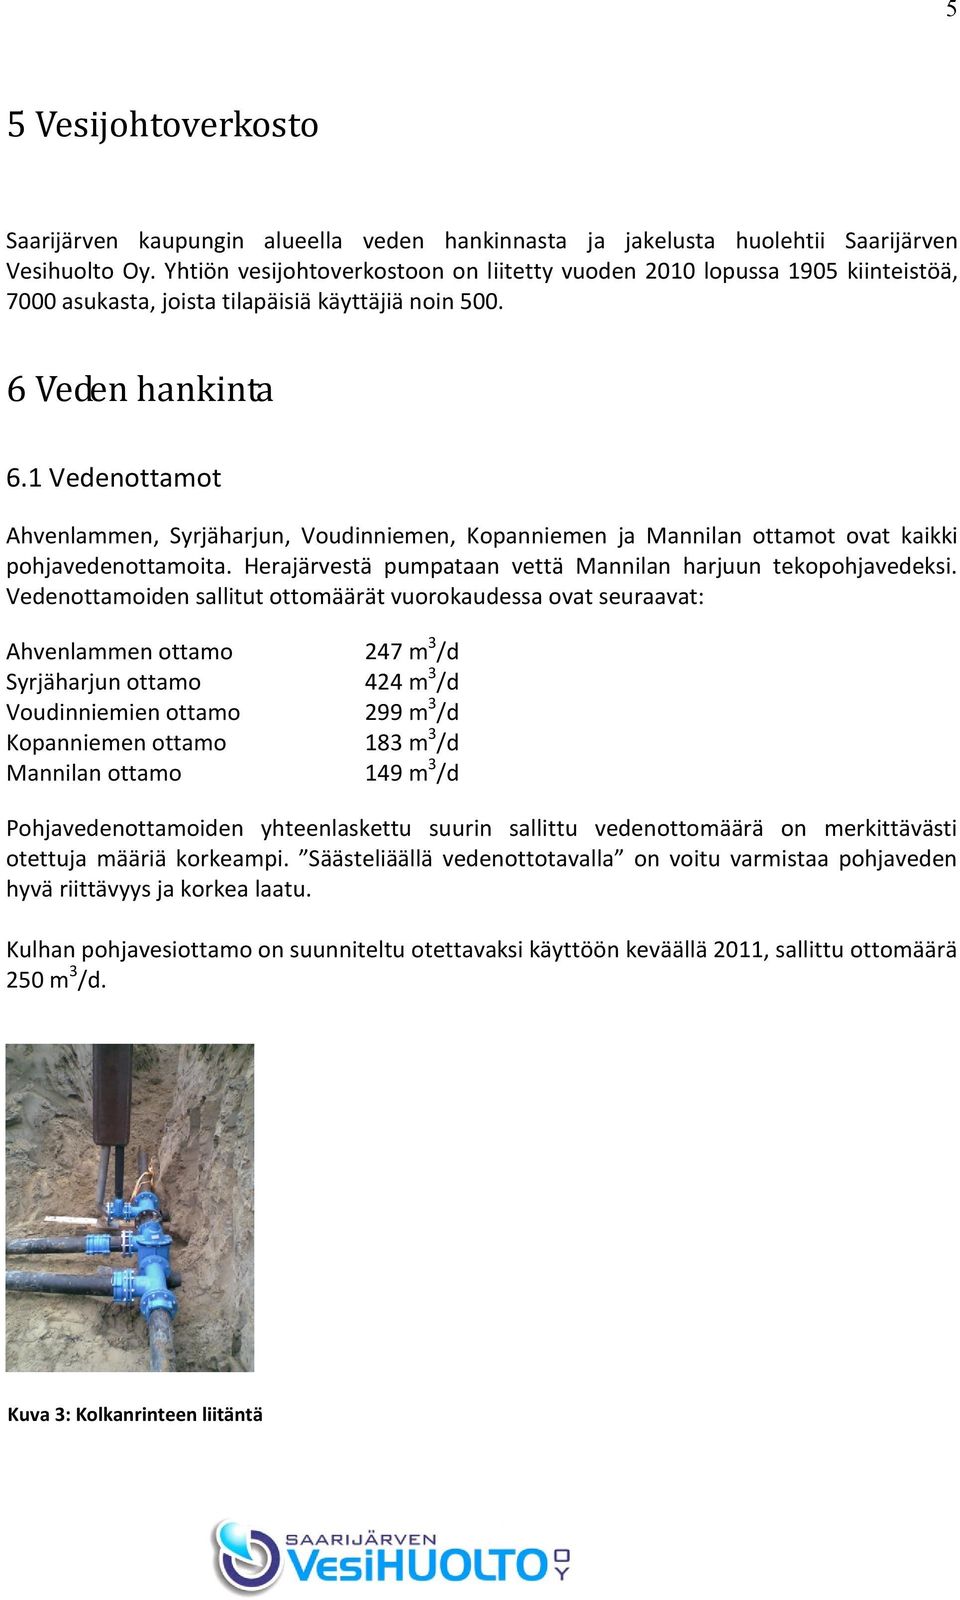 1 Vedenottamot Ahvenlammen, Syrjäharjun, Voudinniemen, Kopanniemen ja Mannilan ottamot ovat kaikki pohjavedenottamoita. Herajärvestä pumpataan vettä Mannilan harjuun tekopohjavedeksi.